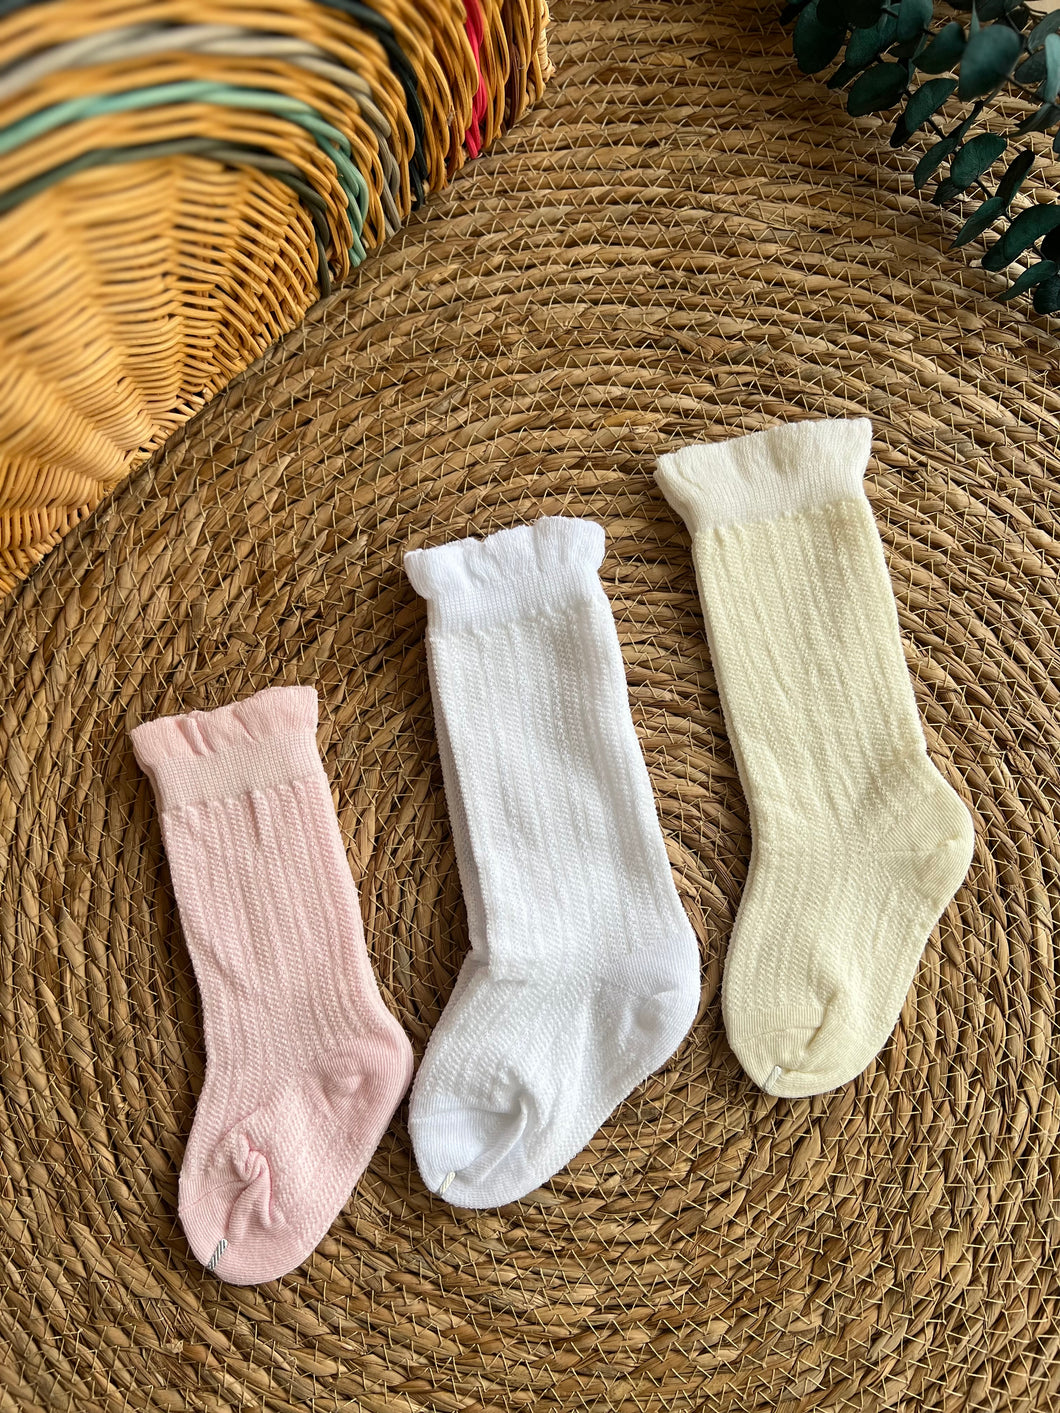 Cute Socks